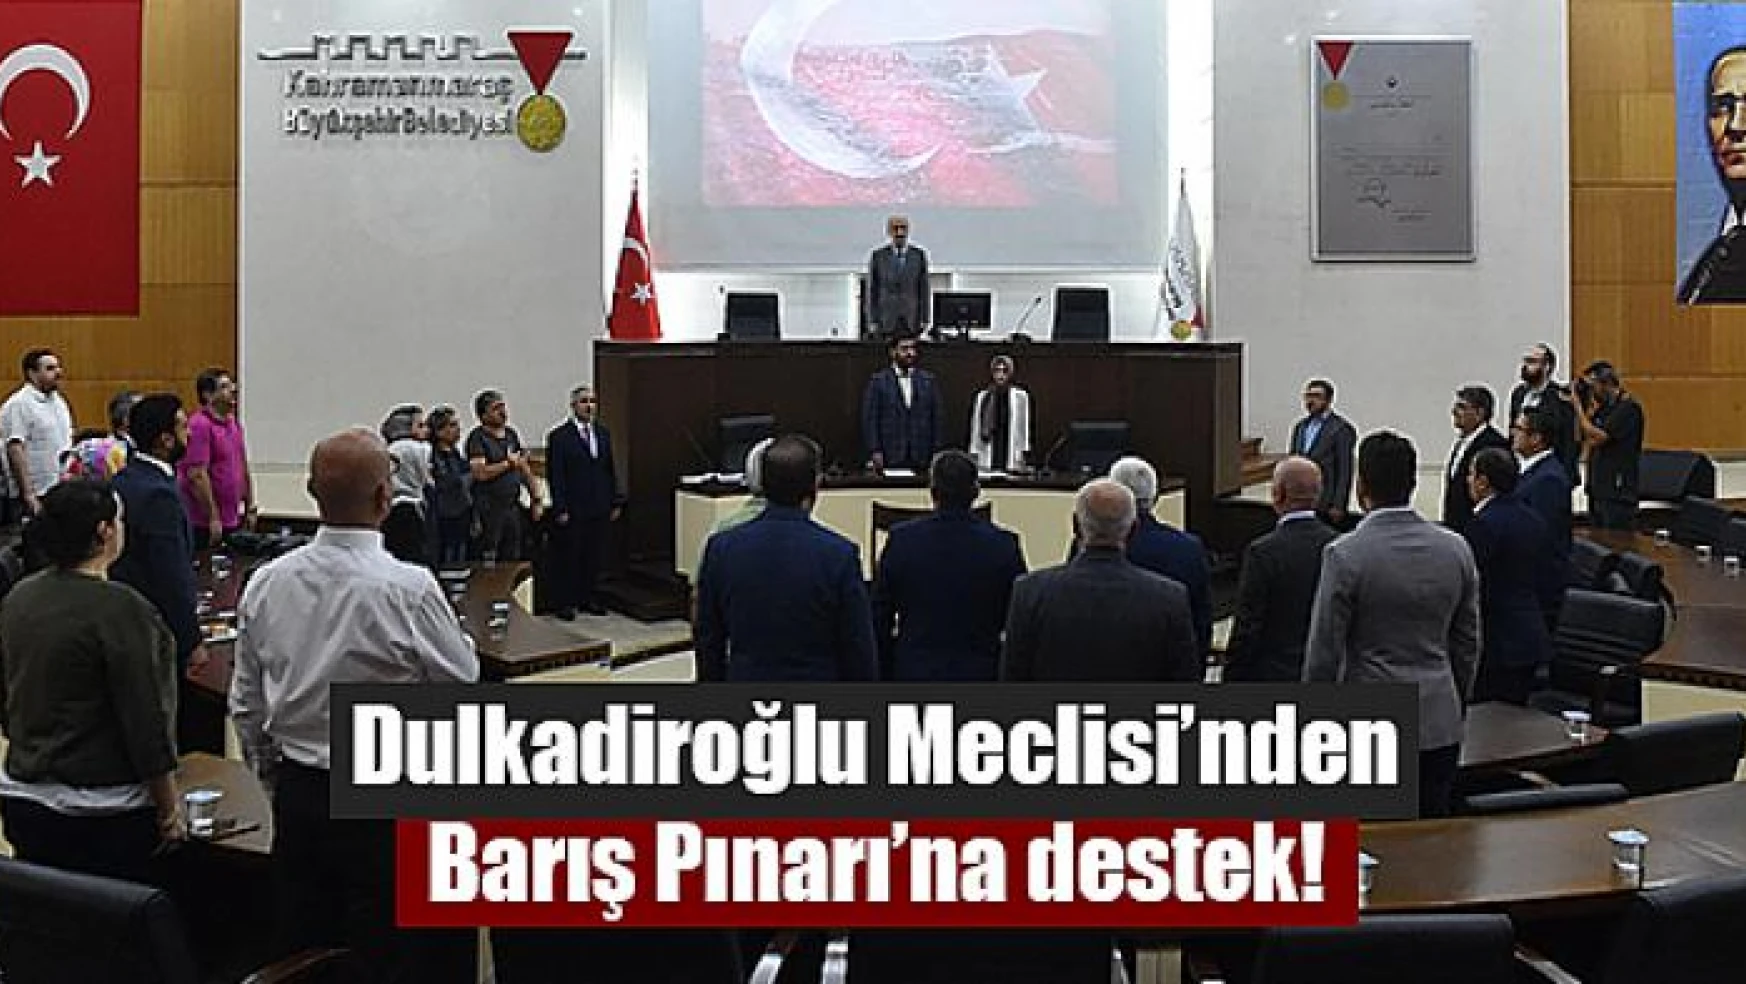 Dulkadiroğlu Meclisi'nden Barış Pınarı'na destek!